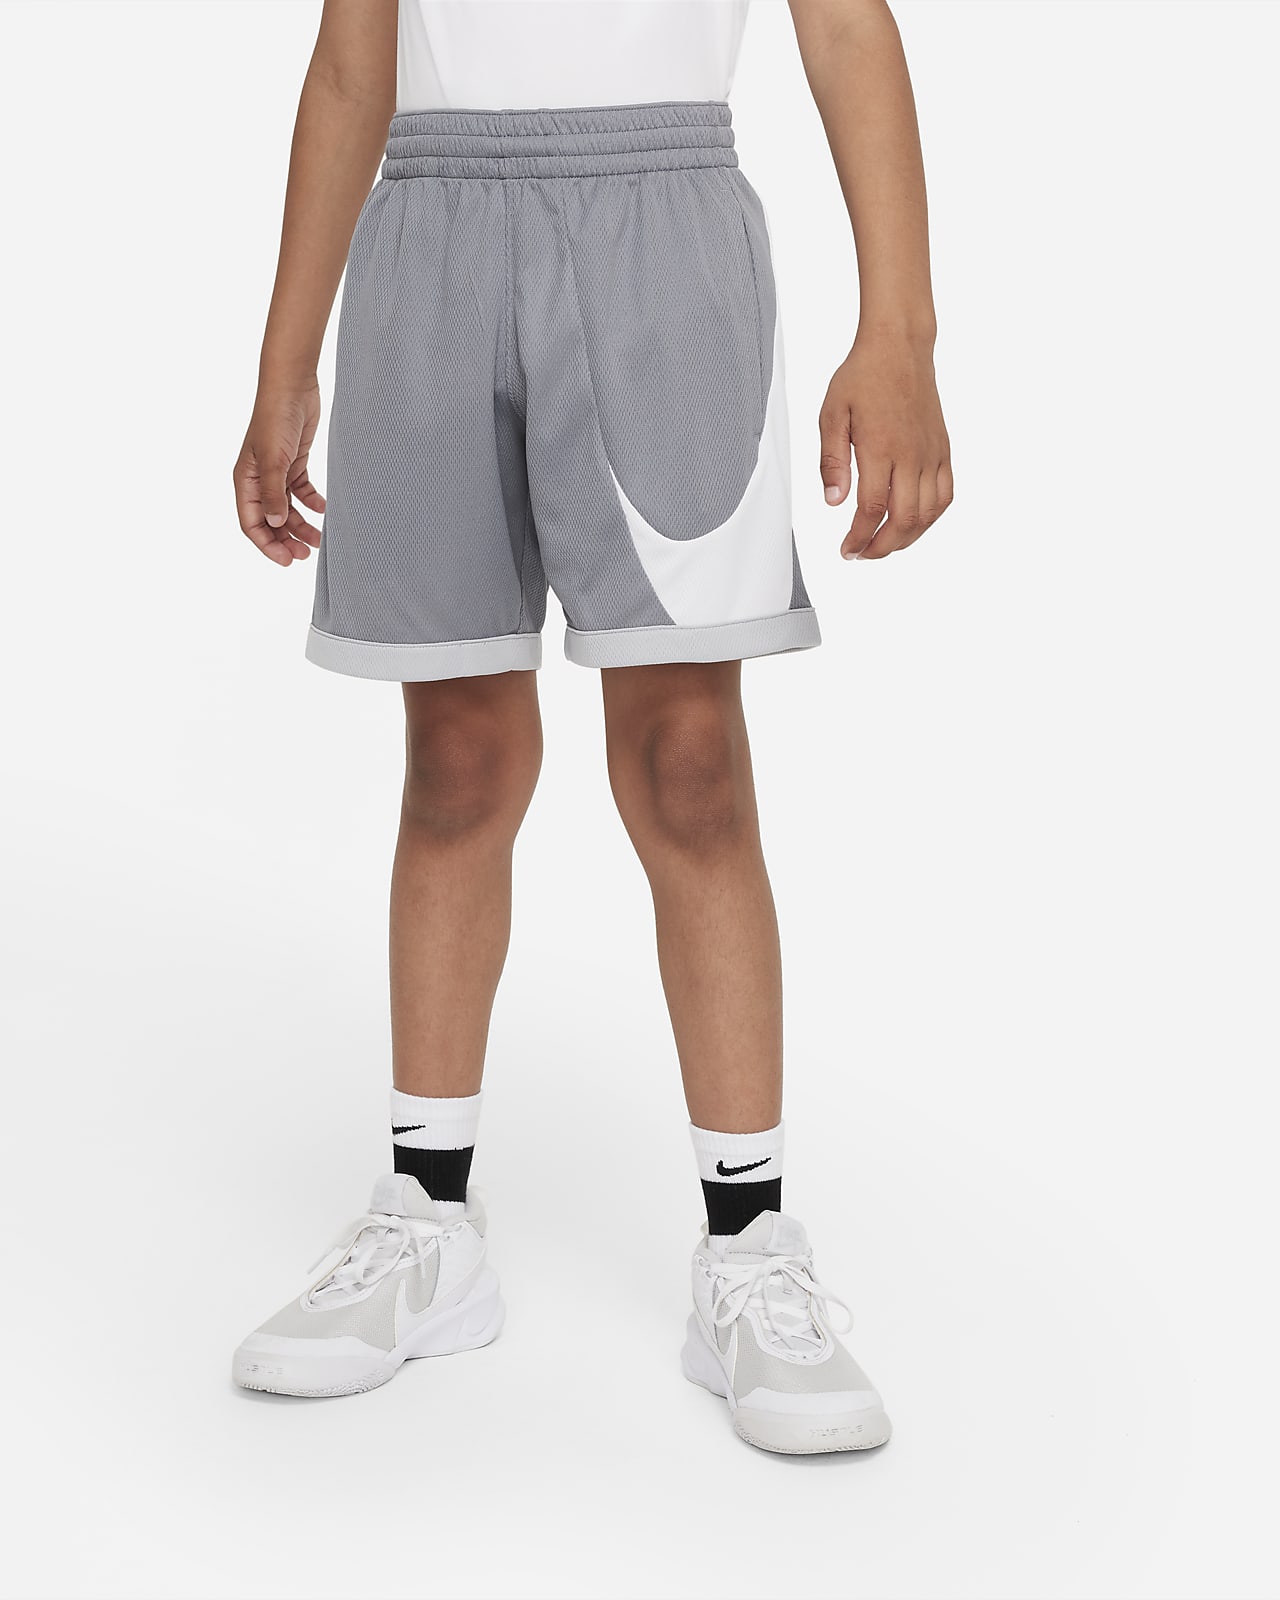 Tegne forsikring Envision legeplads Nike Dri-FIT-basketballshorts til større børn (drenge). Nike DK